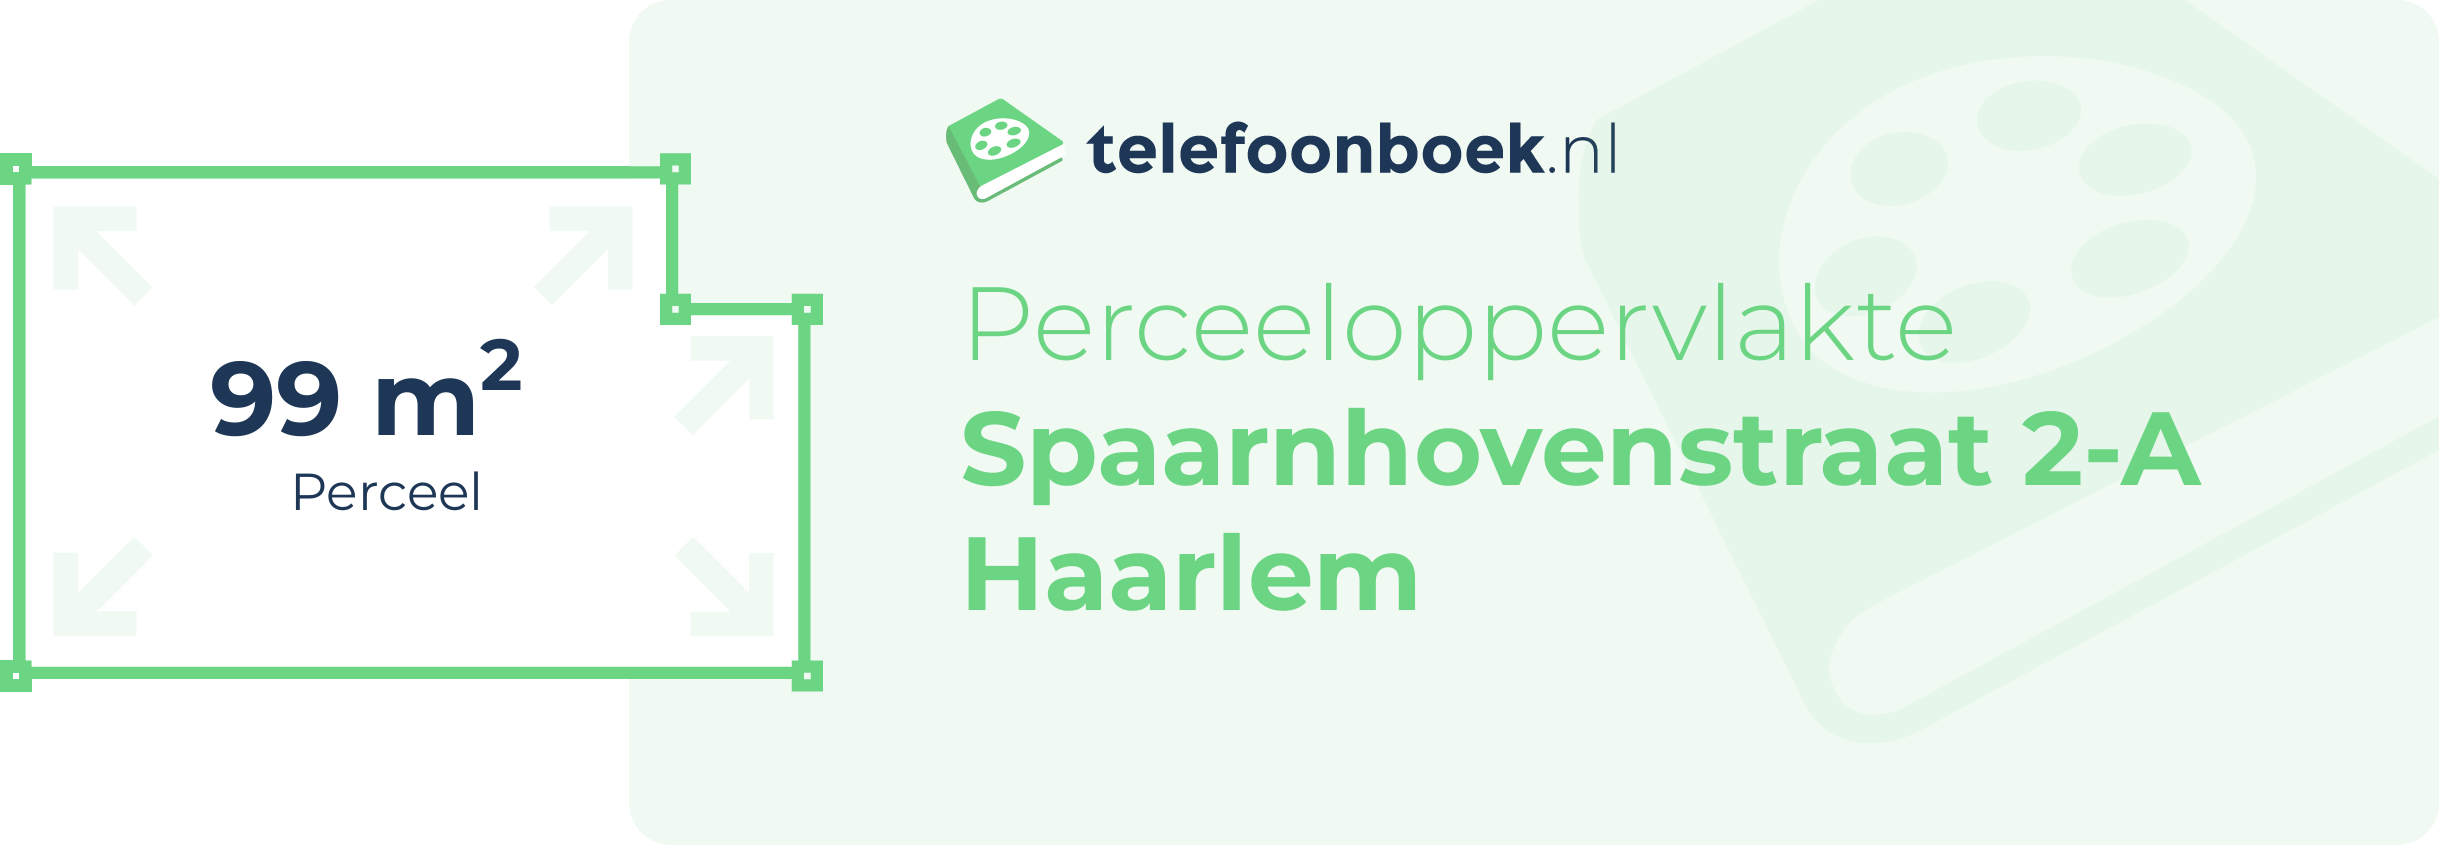 Perceeloppervlakte Spaarnhovenstraat 2-A Haarlem